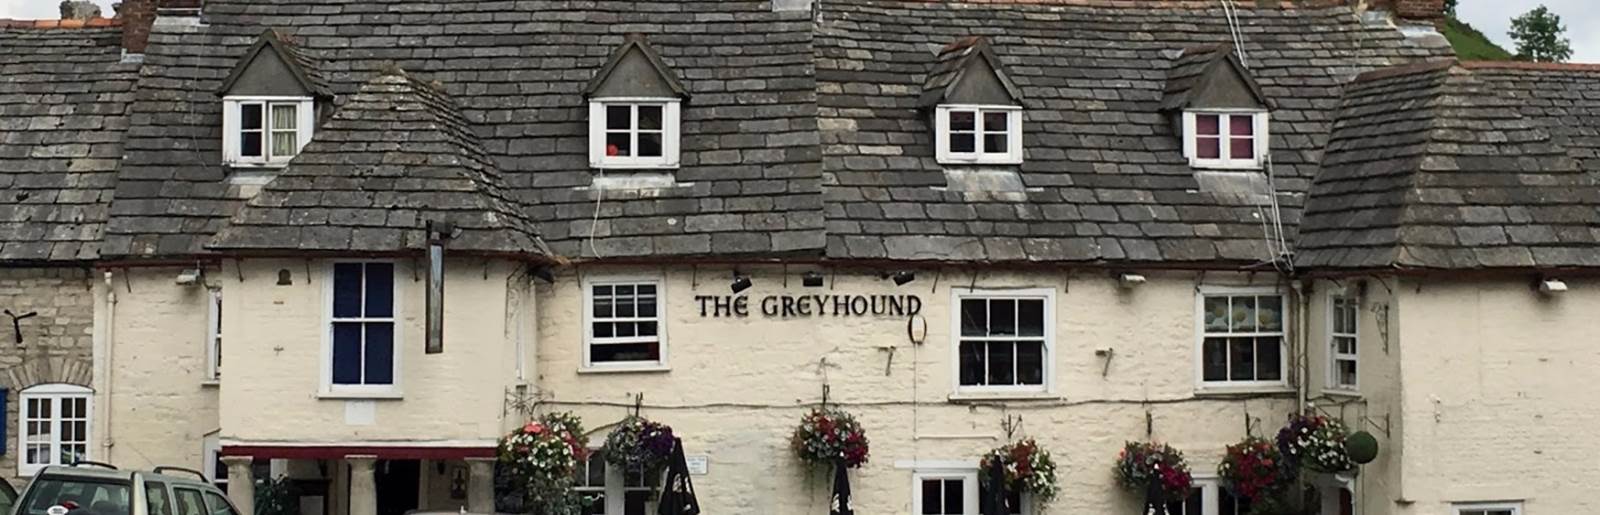 The-Greyhound-Inn-Corfe-Castle 